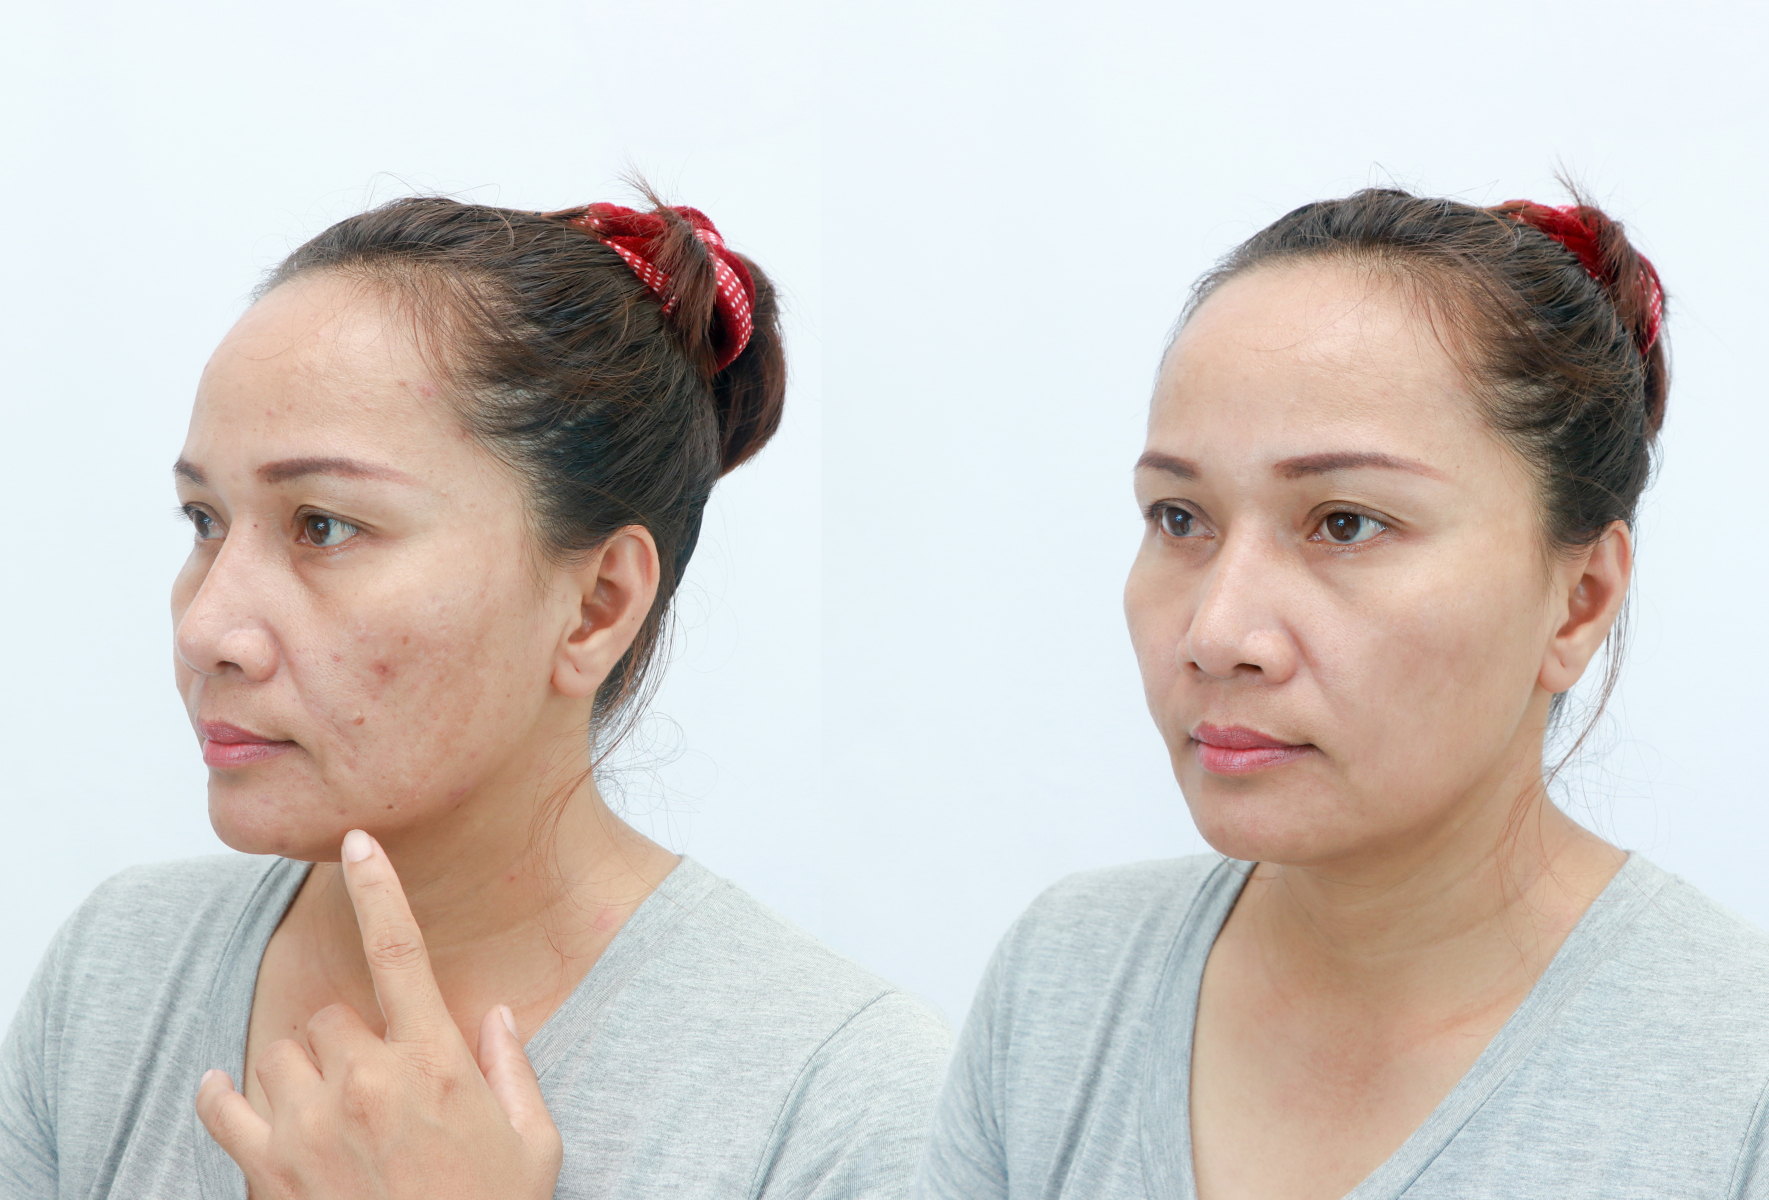 Căng da mặt là tiểu phẫu được rất nhiều chị em yêu thích bởi hiệu quả cải thiện quá trình lão hóa khá cao.